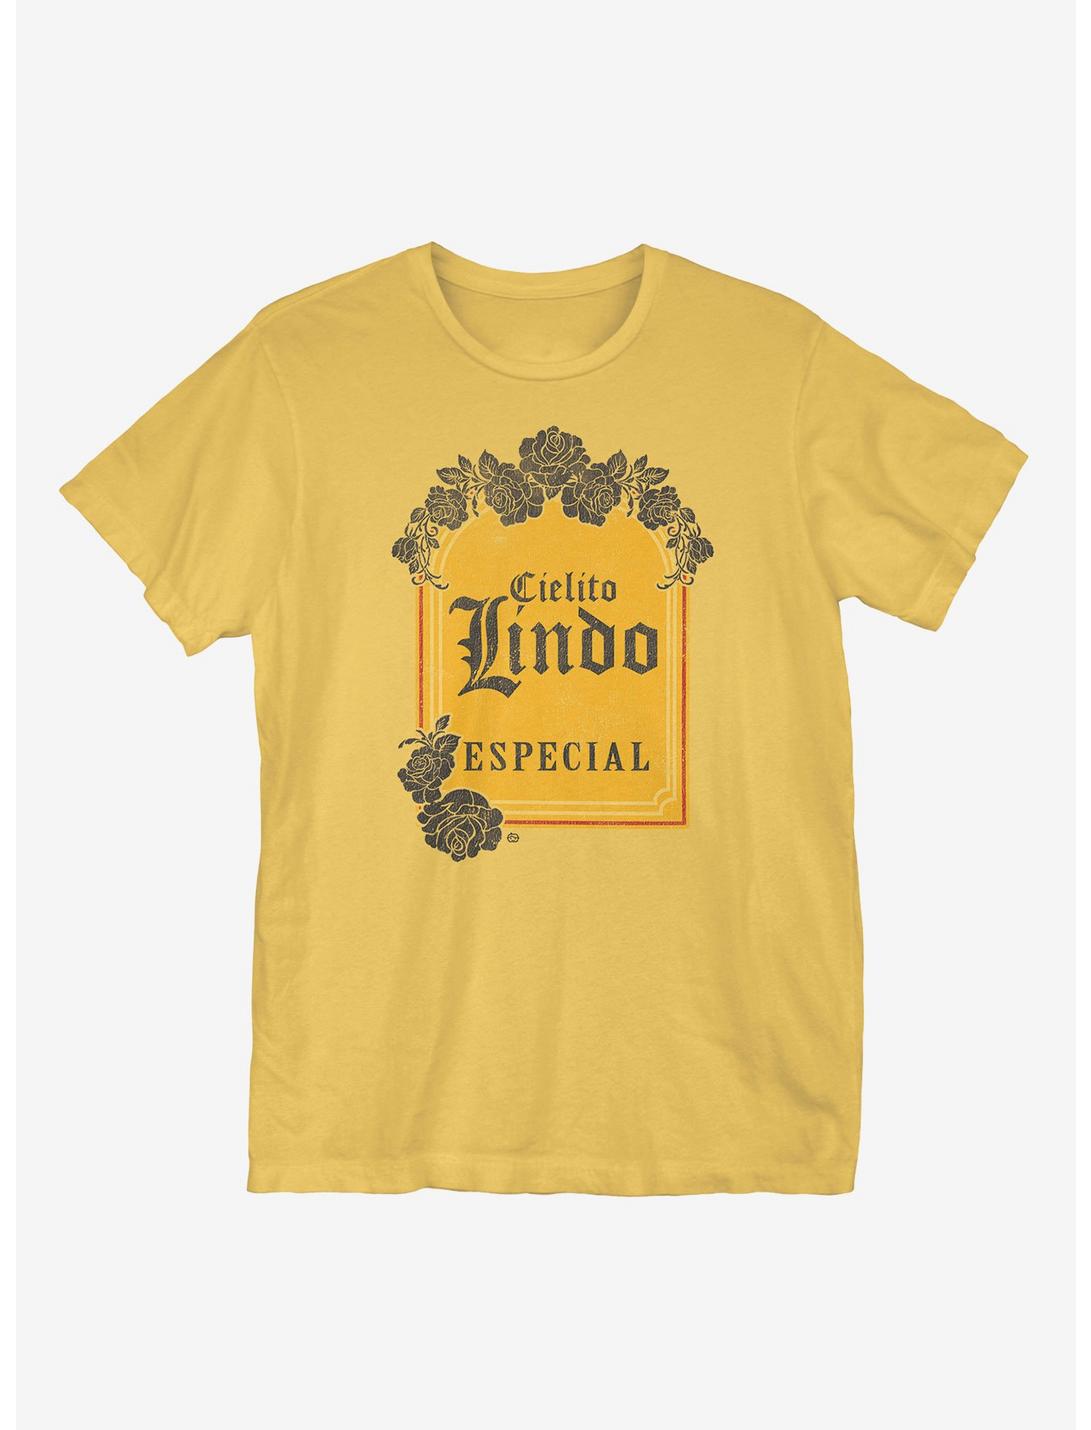 Cielito Lindo T-Shirt, SPRING YELLOW, hi-res